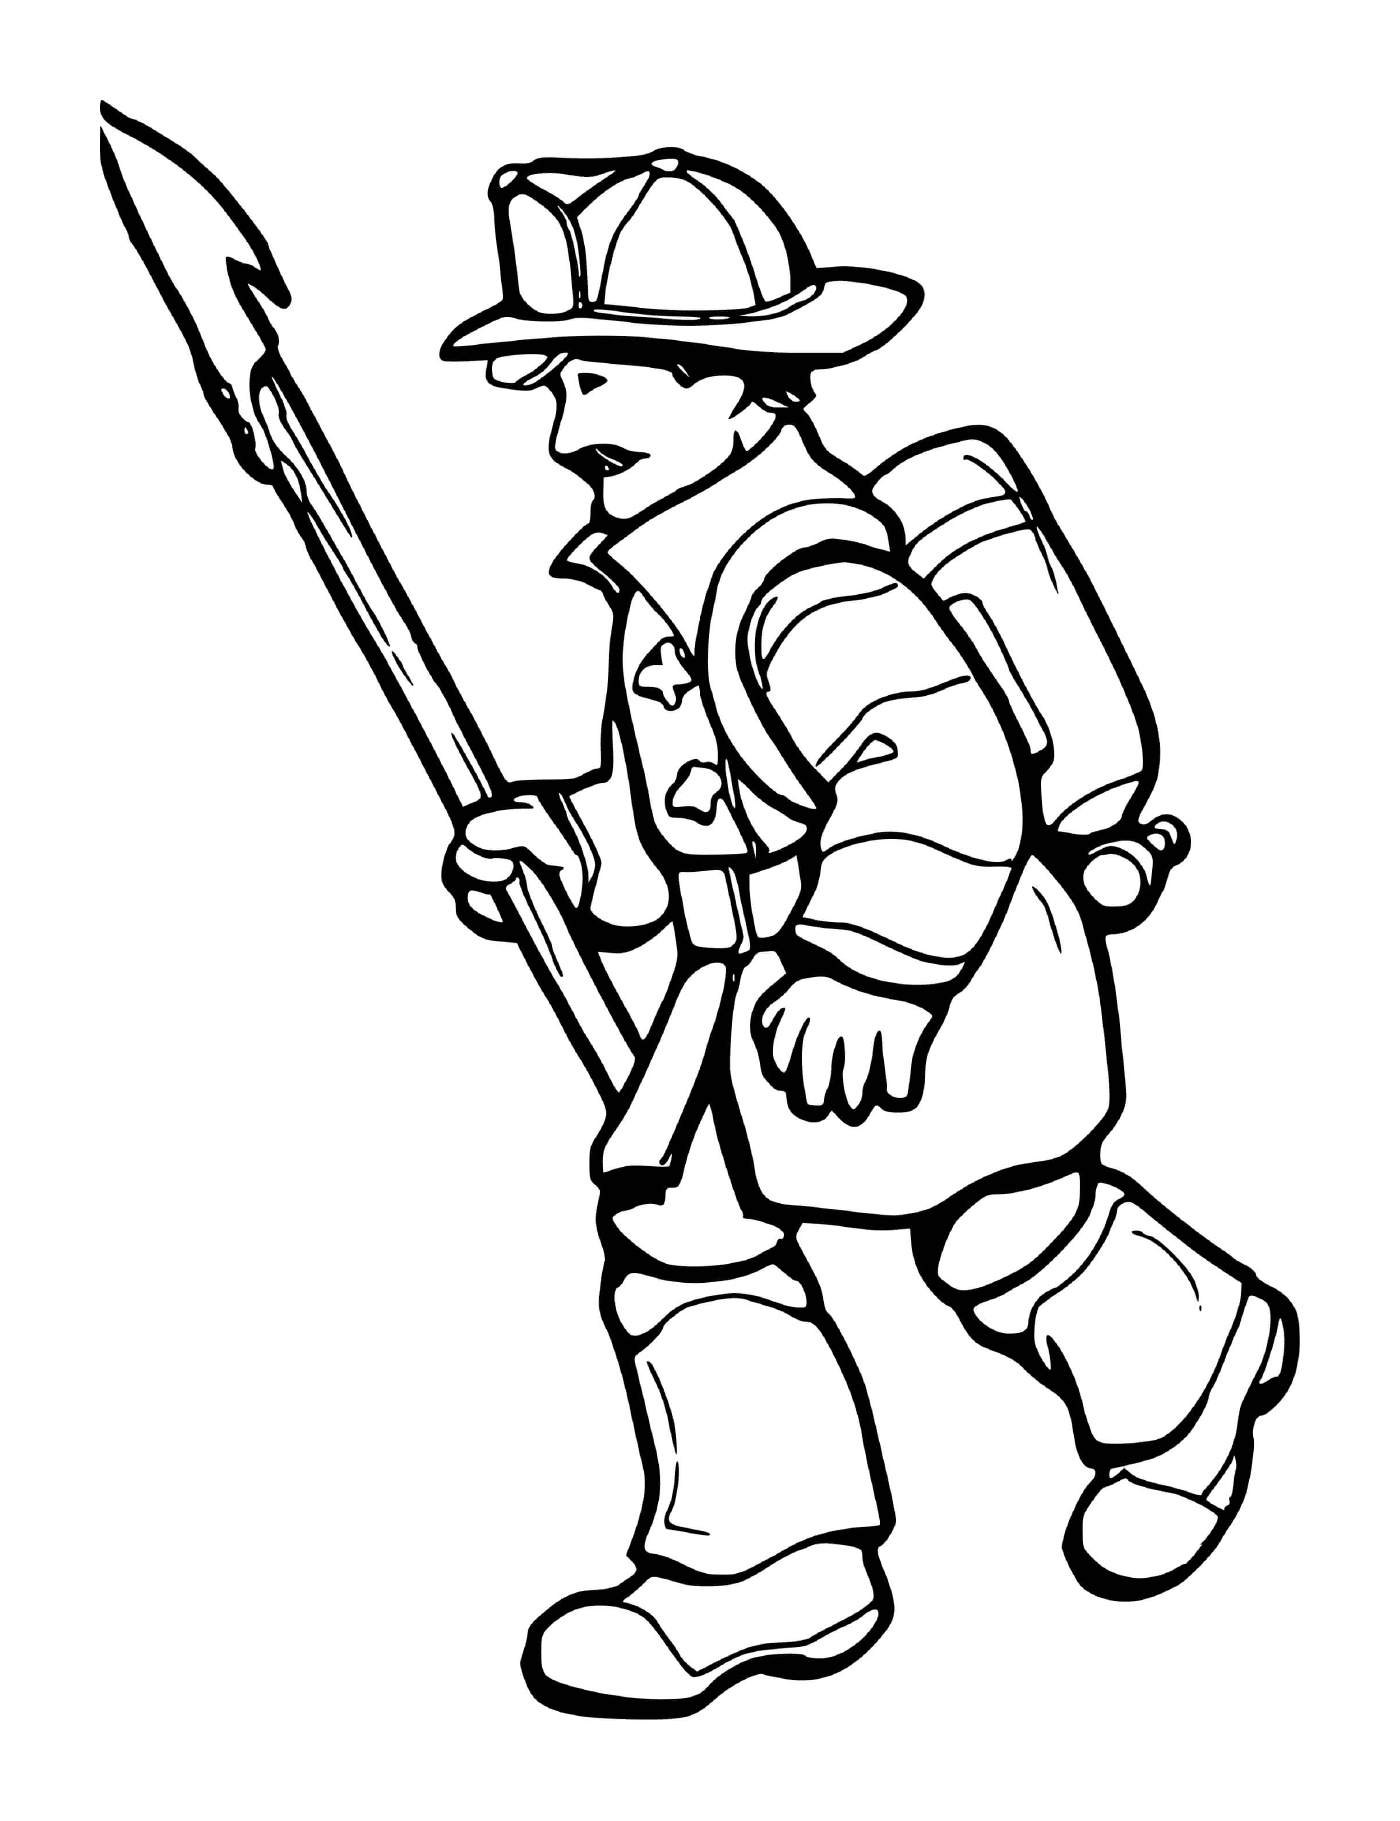  Feuerwehrmann mit Sauerstoffflasche 